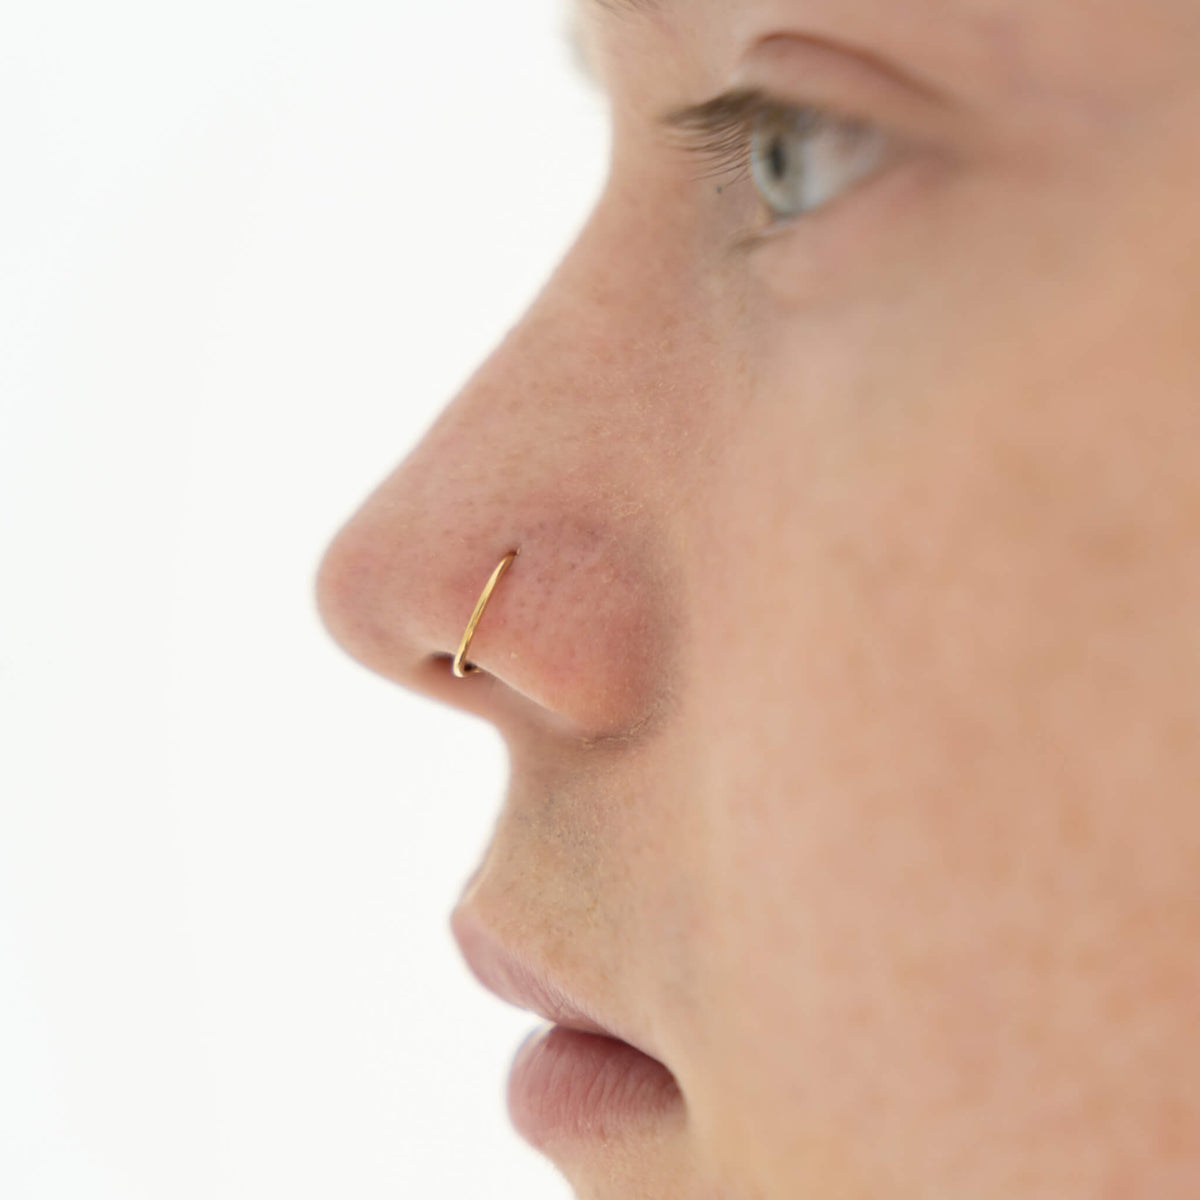 Tiny Secret Nose Hoop Ring in 14k Gold